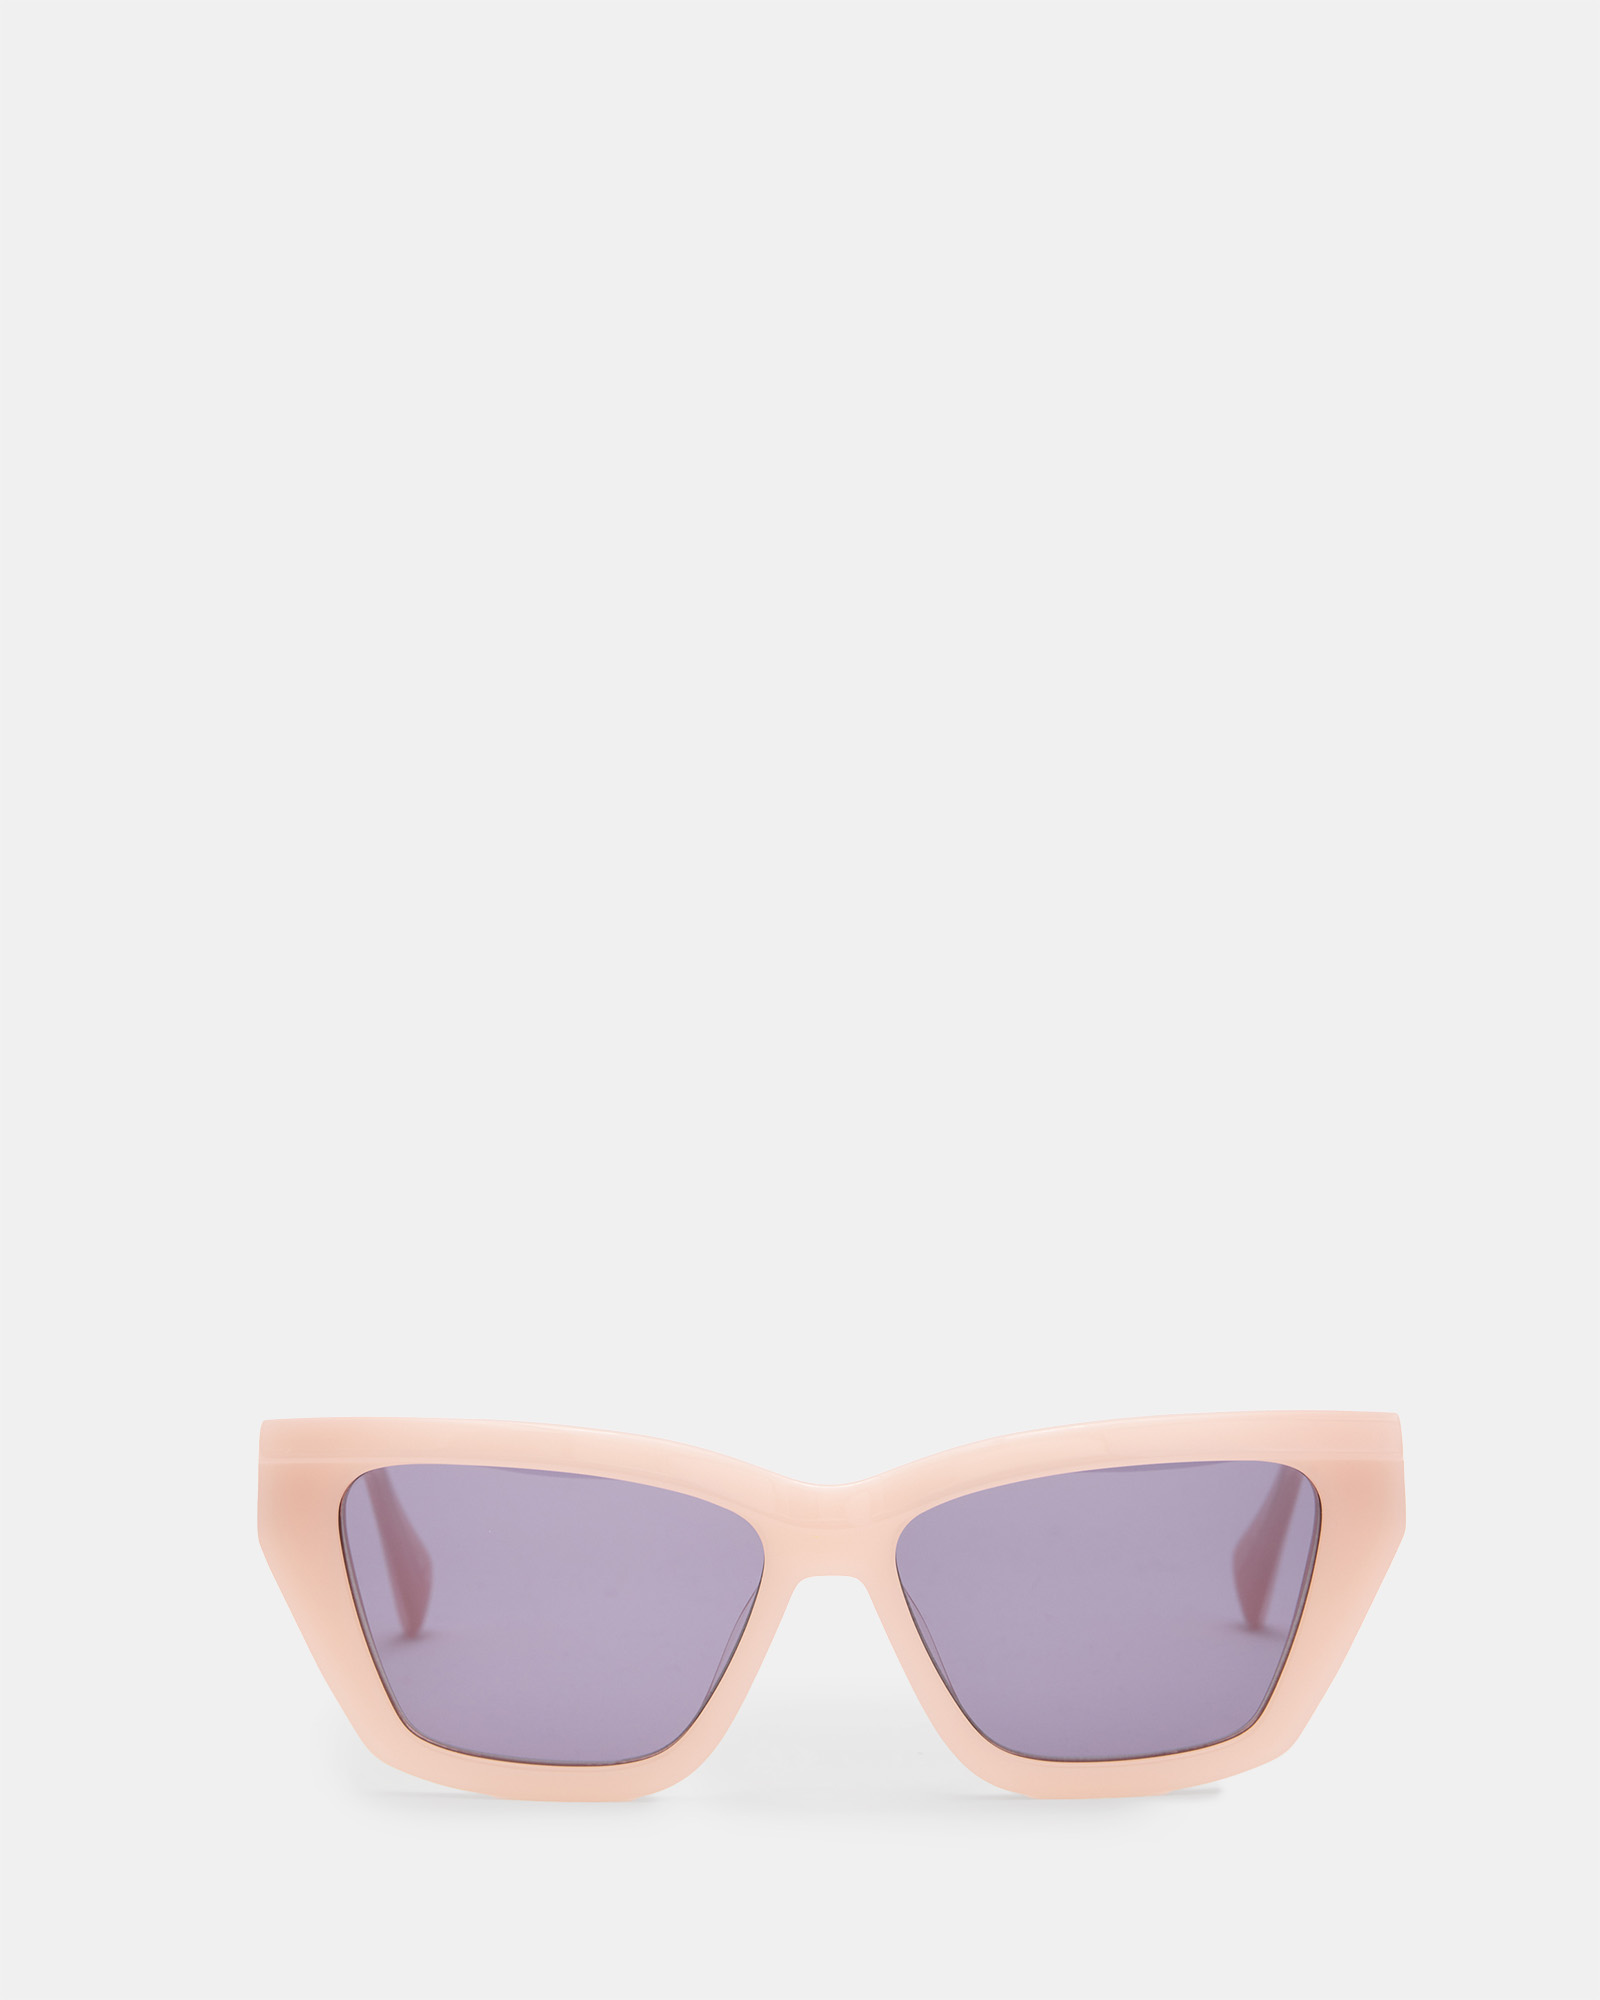 AllSaints Kitty Rectangular Cat Eye Sunglasses,, PLASTER PINK